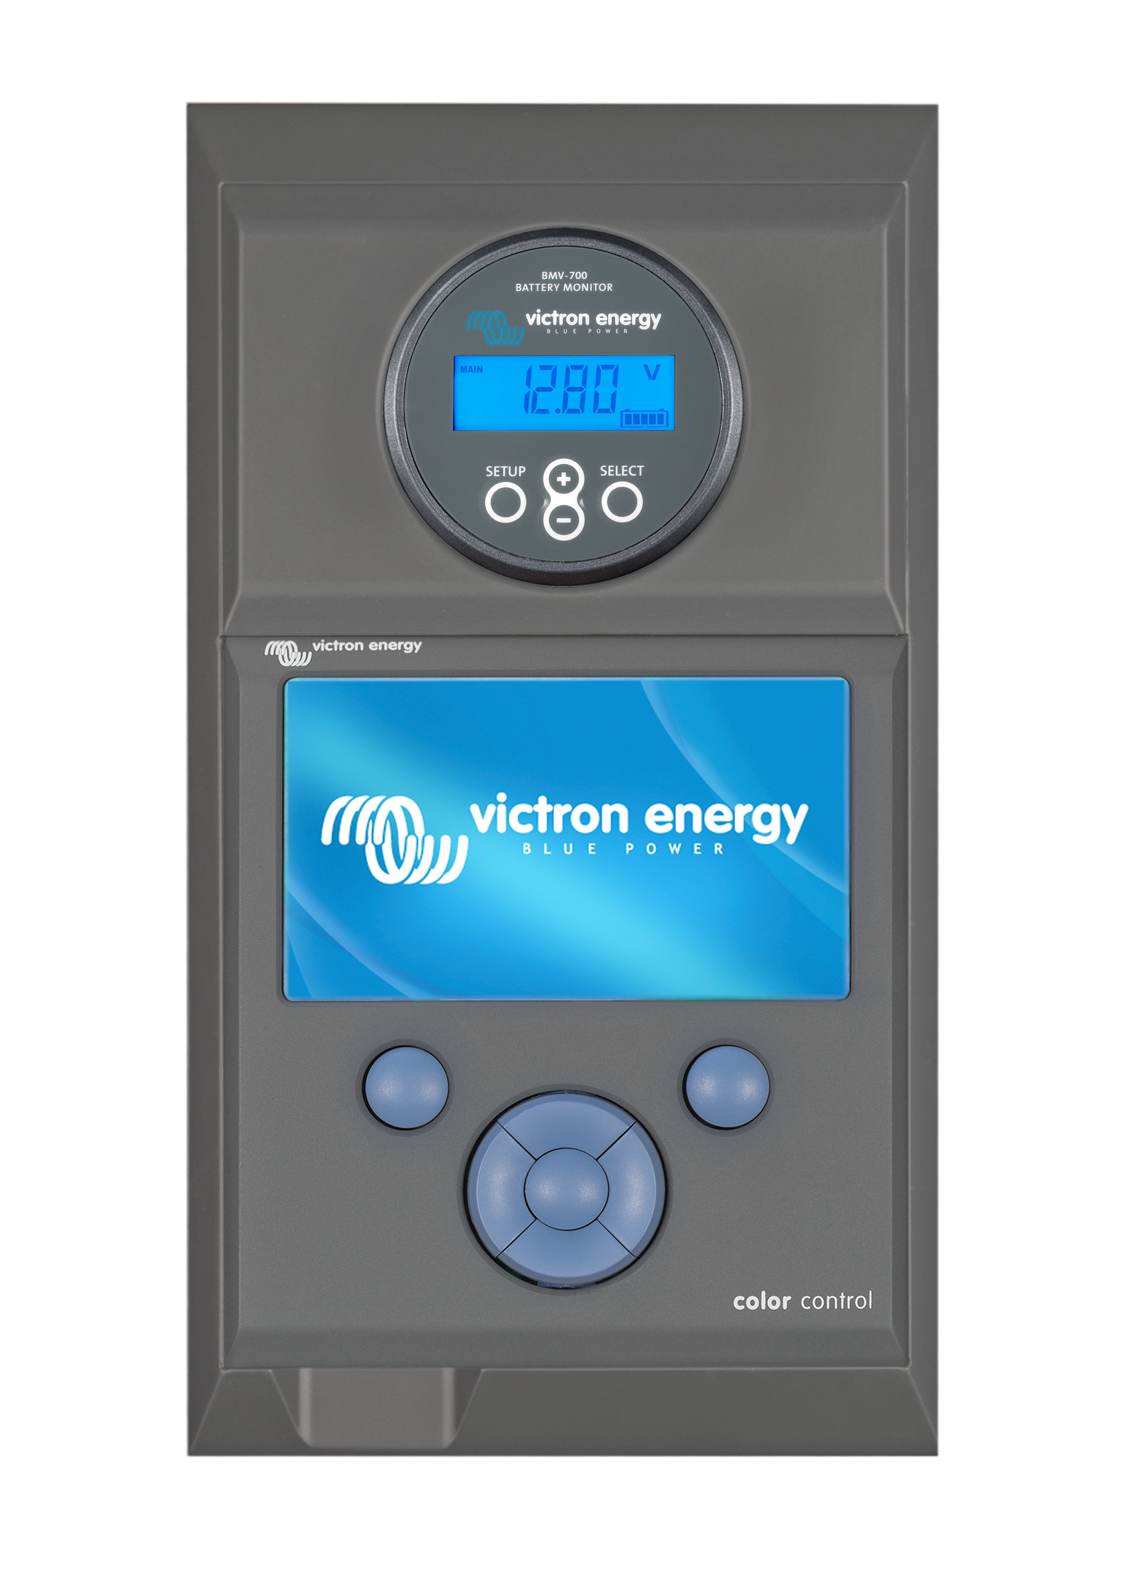  90 V DC Victron Energy batería Monitor BMV de 700 9  1 pieza bam010 700000 